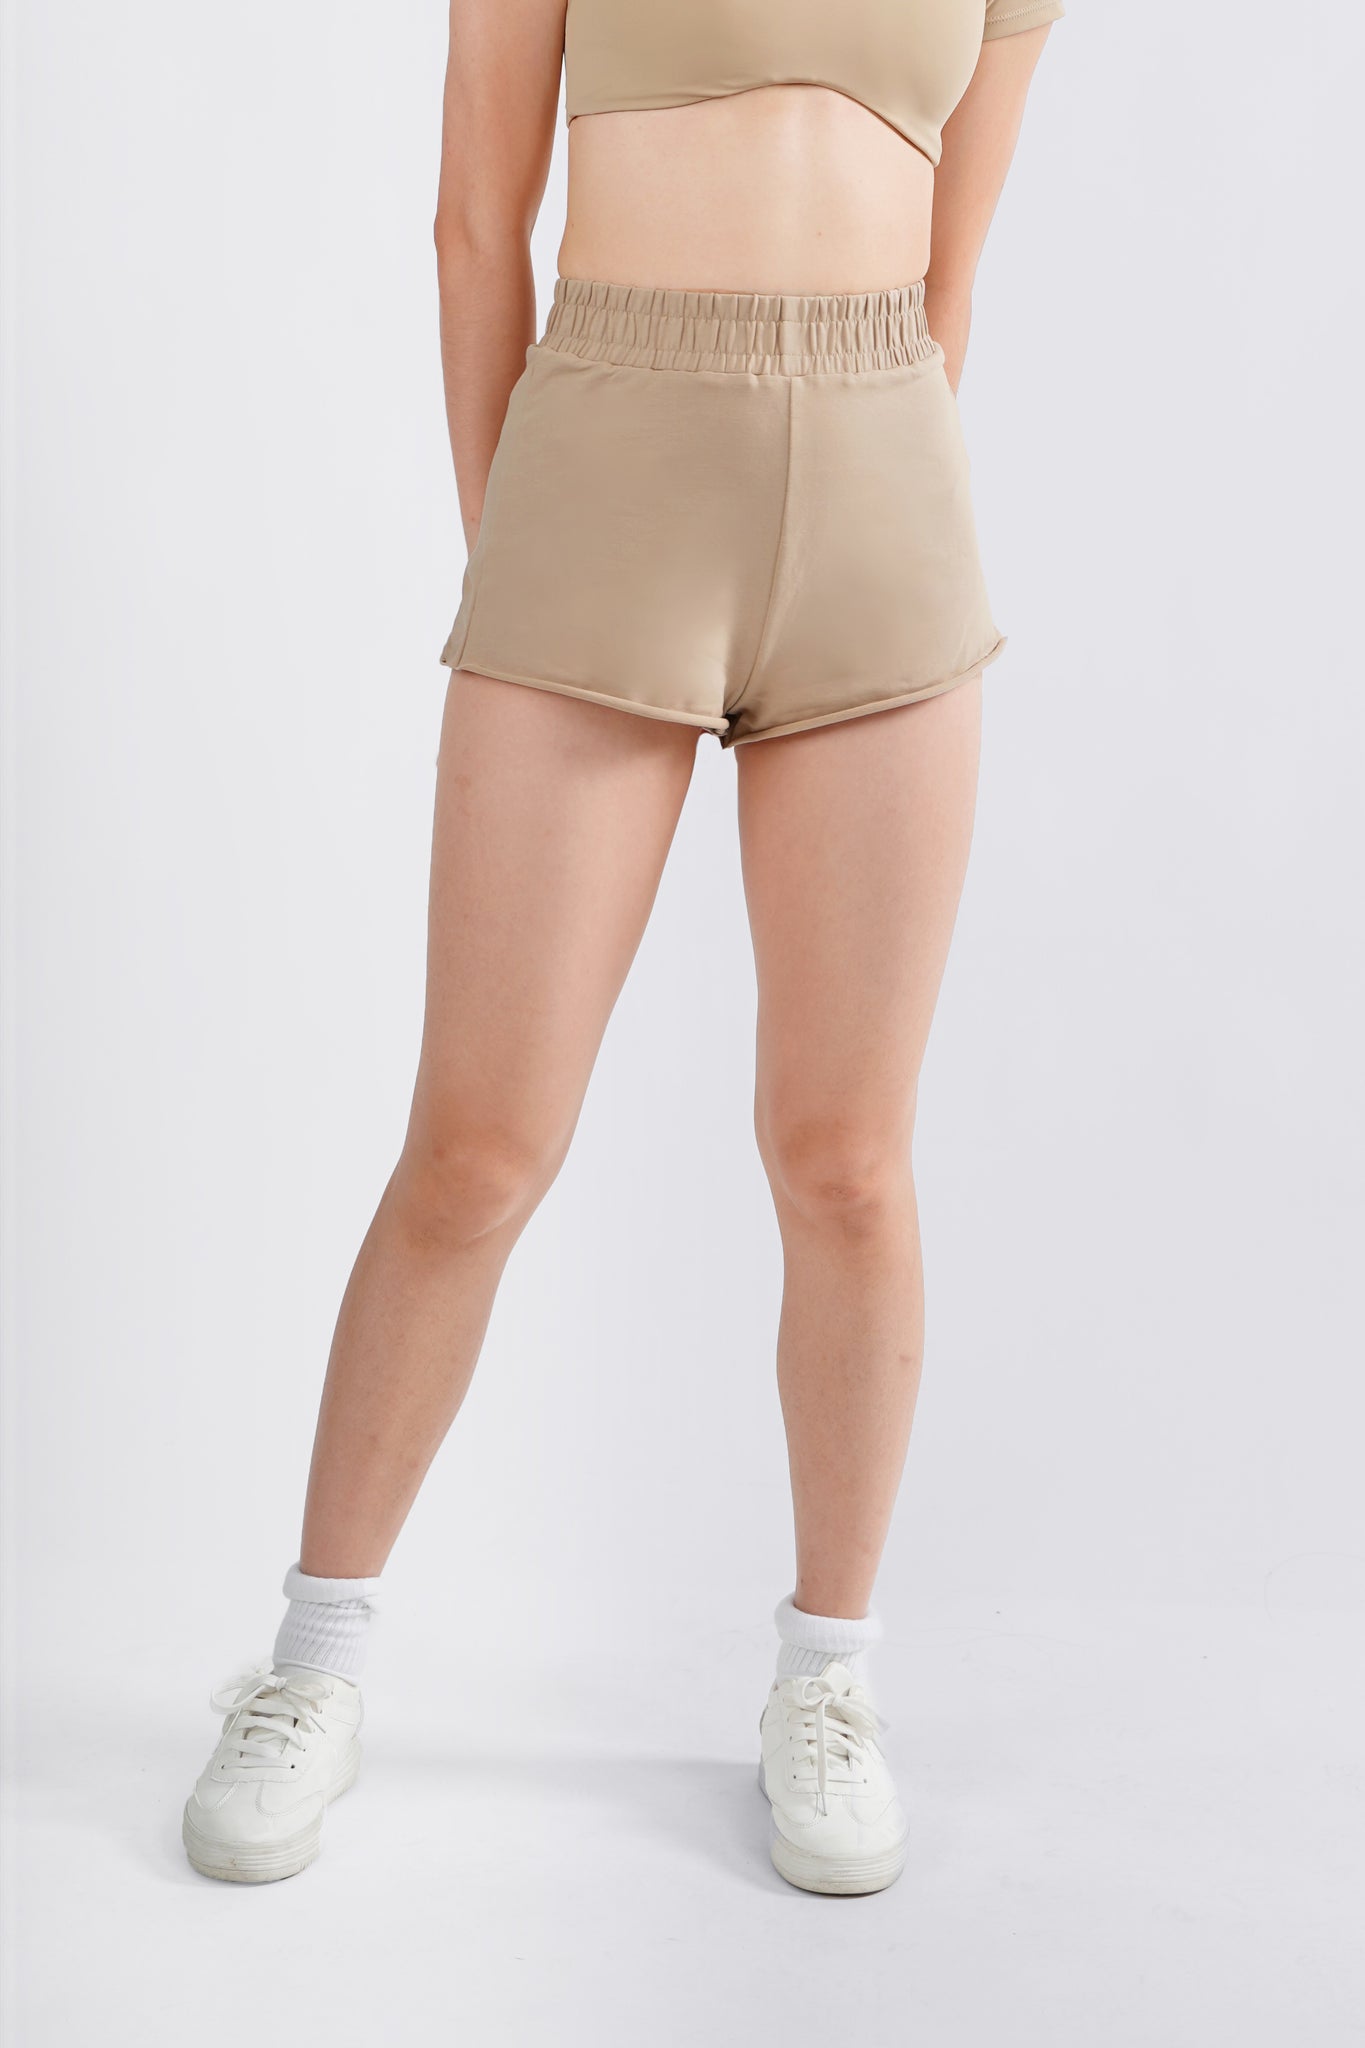 Bombshell High-Waist Hot Shorts